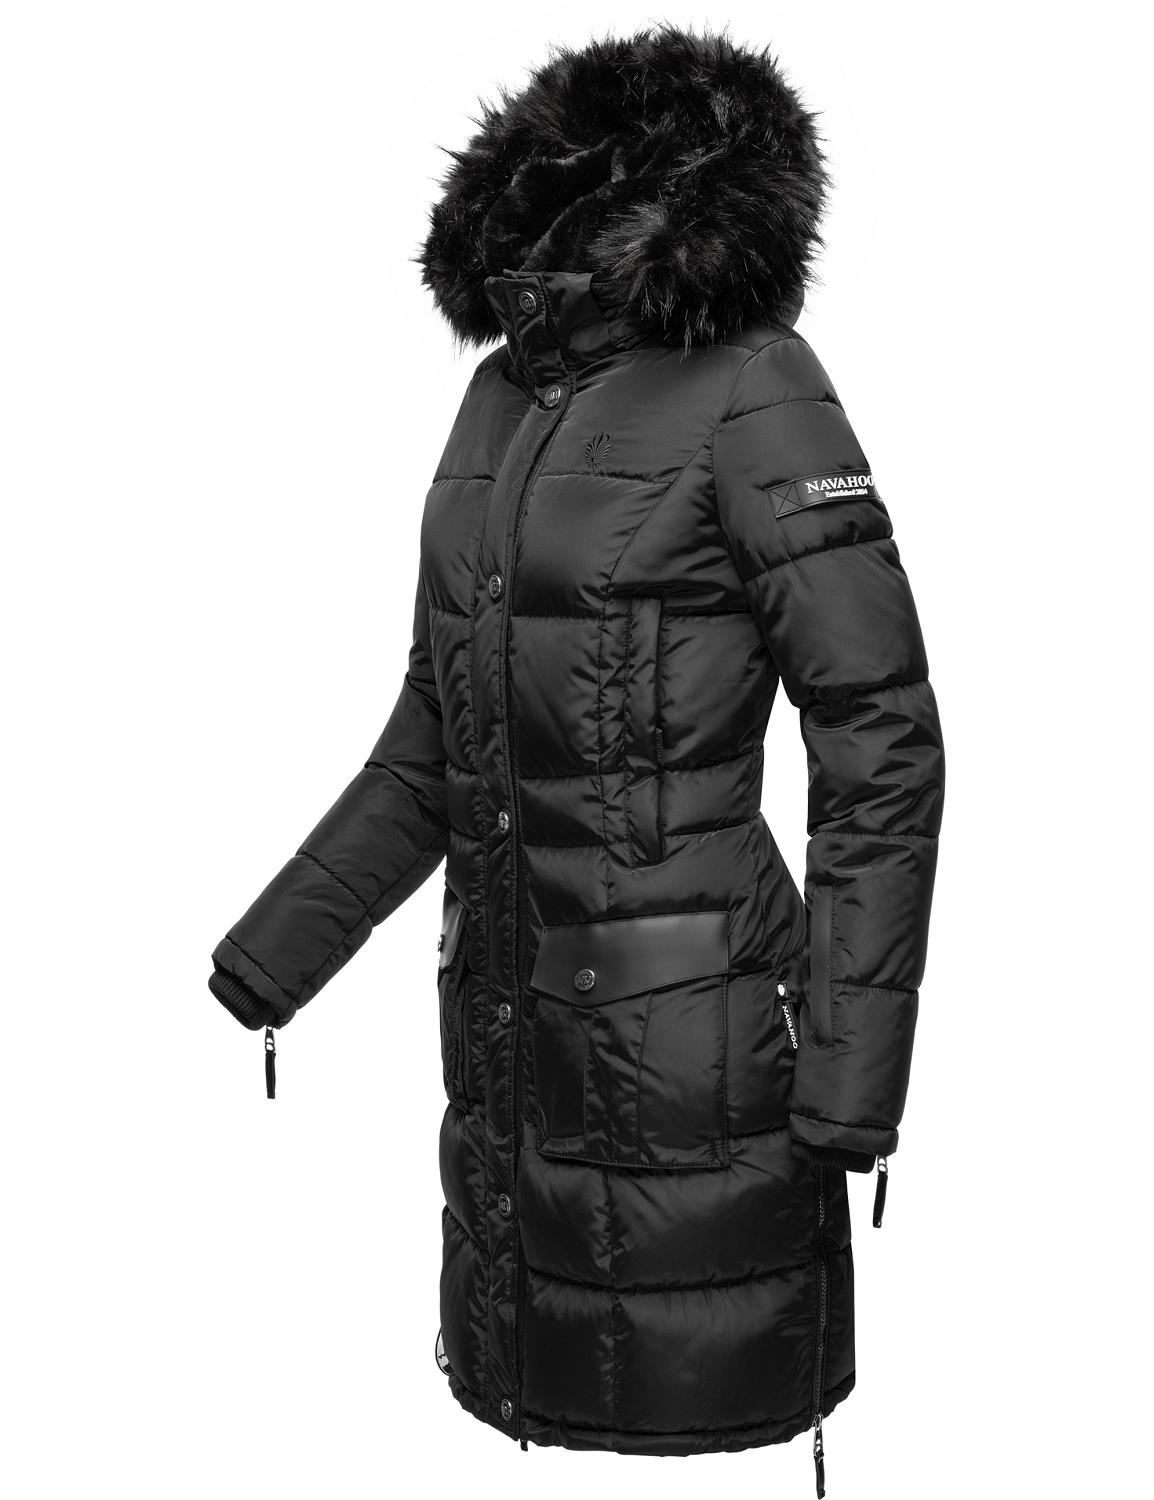 Plus size Odzież NAVAHOO Płaszcz zimowy Sinja w kolorze Czarnym 